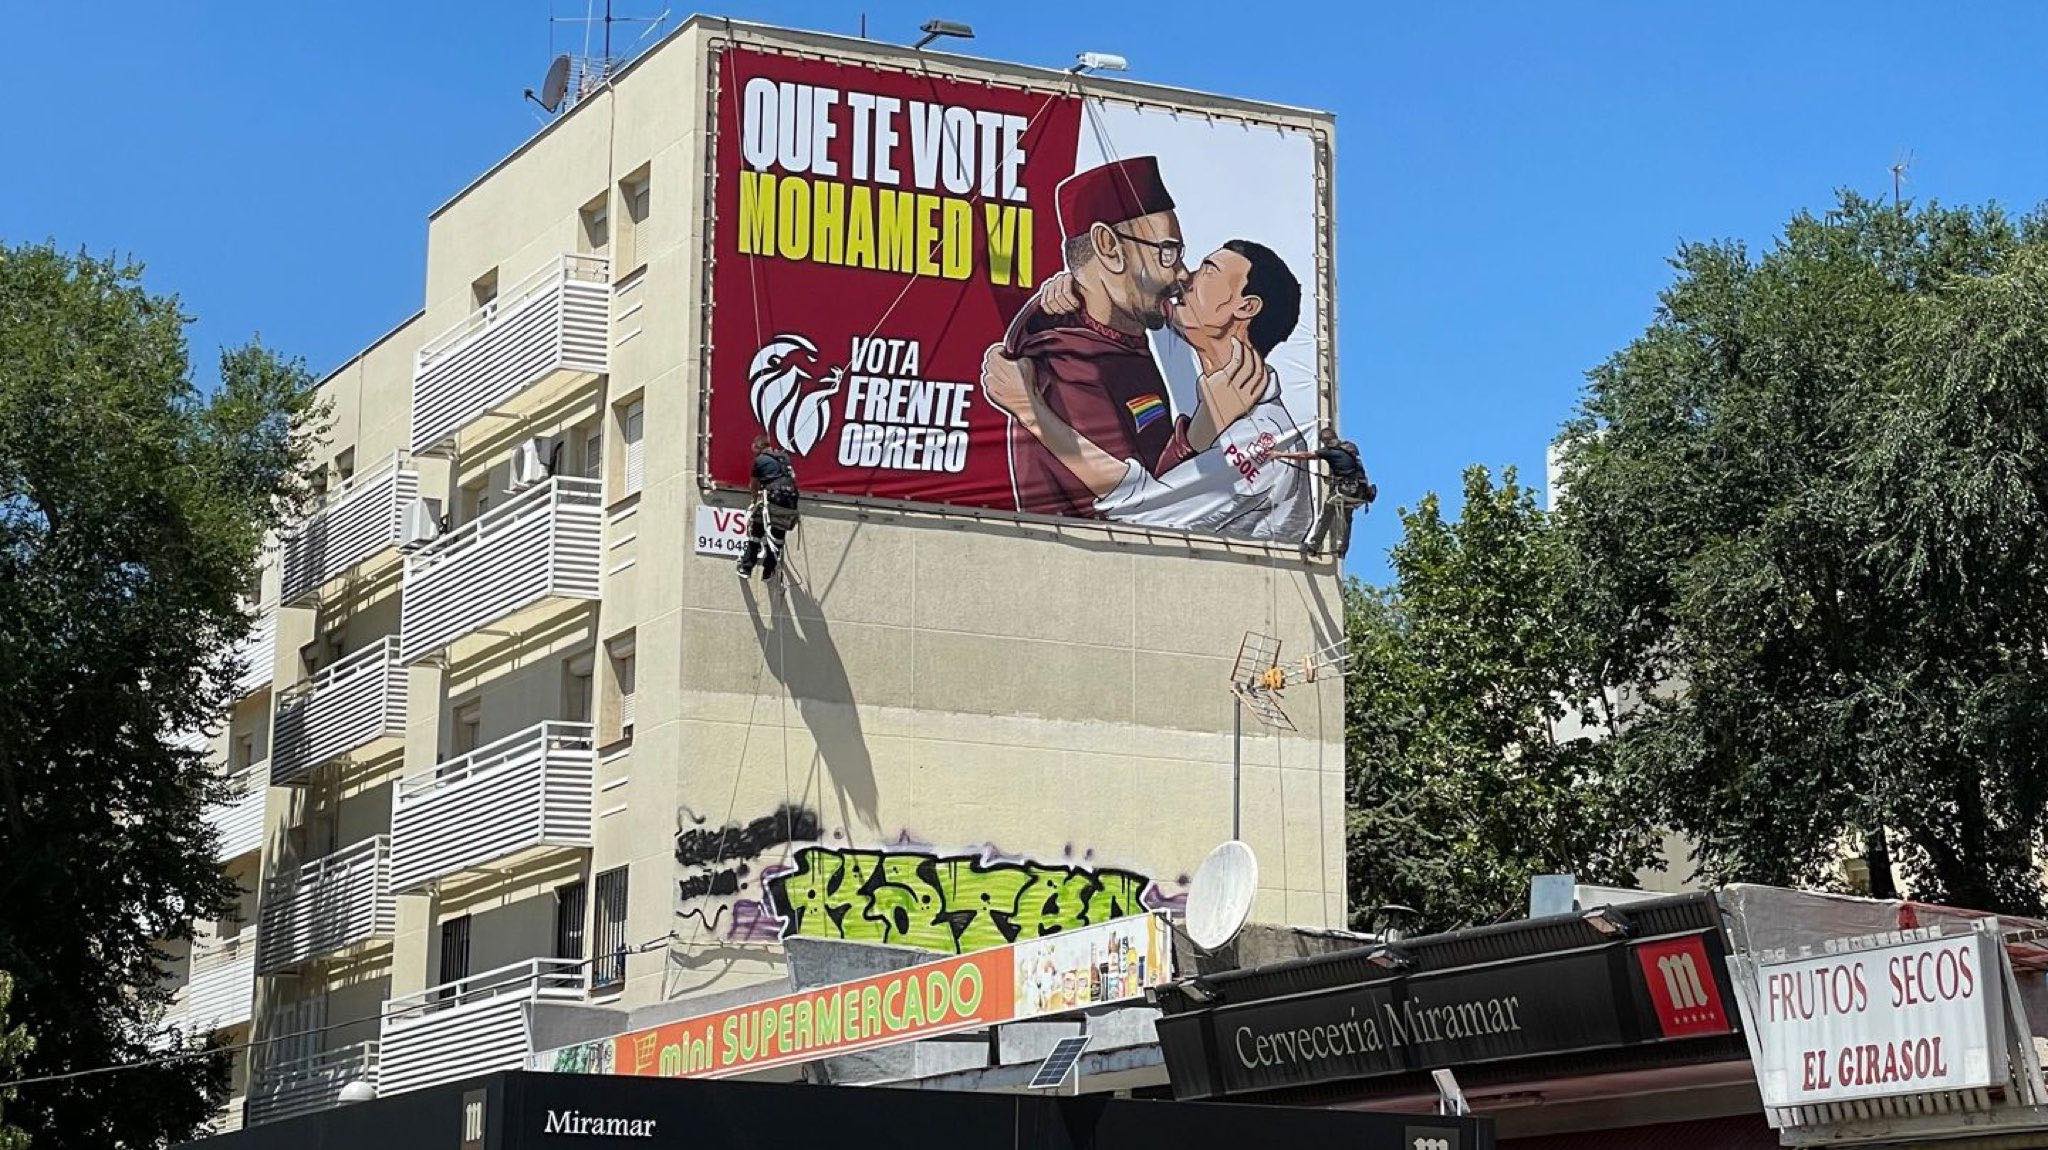 La lona de Pedro Sánchez y Mohamed Vl en la ciudad de Madrid.